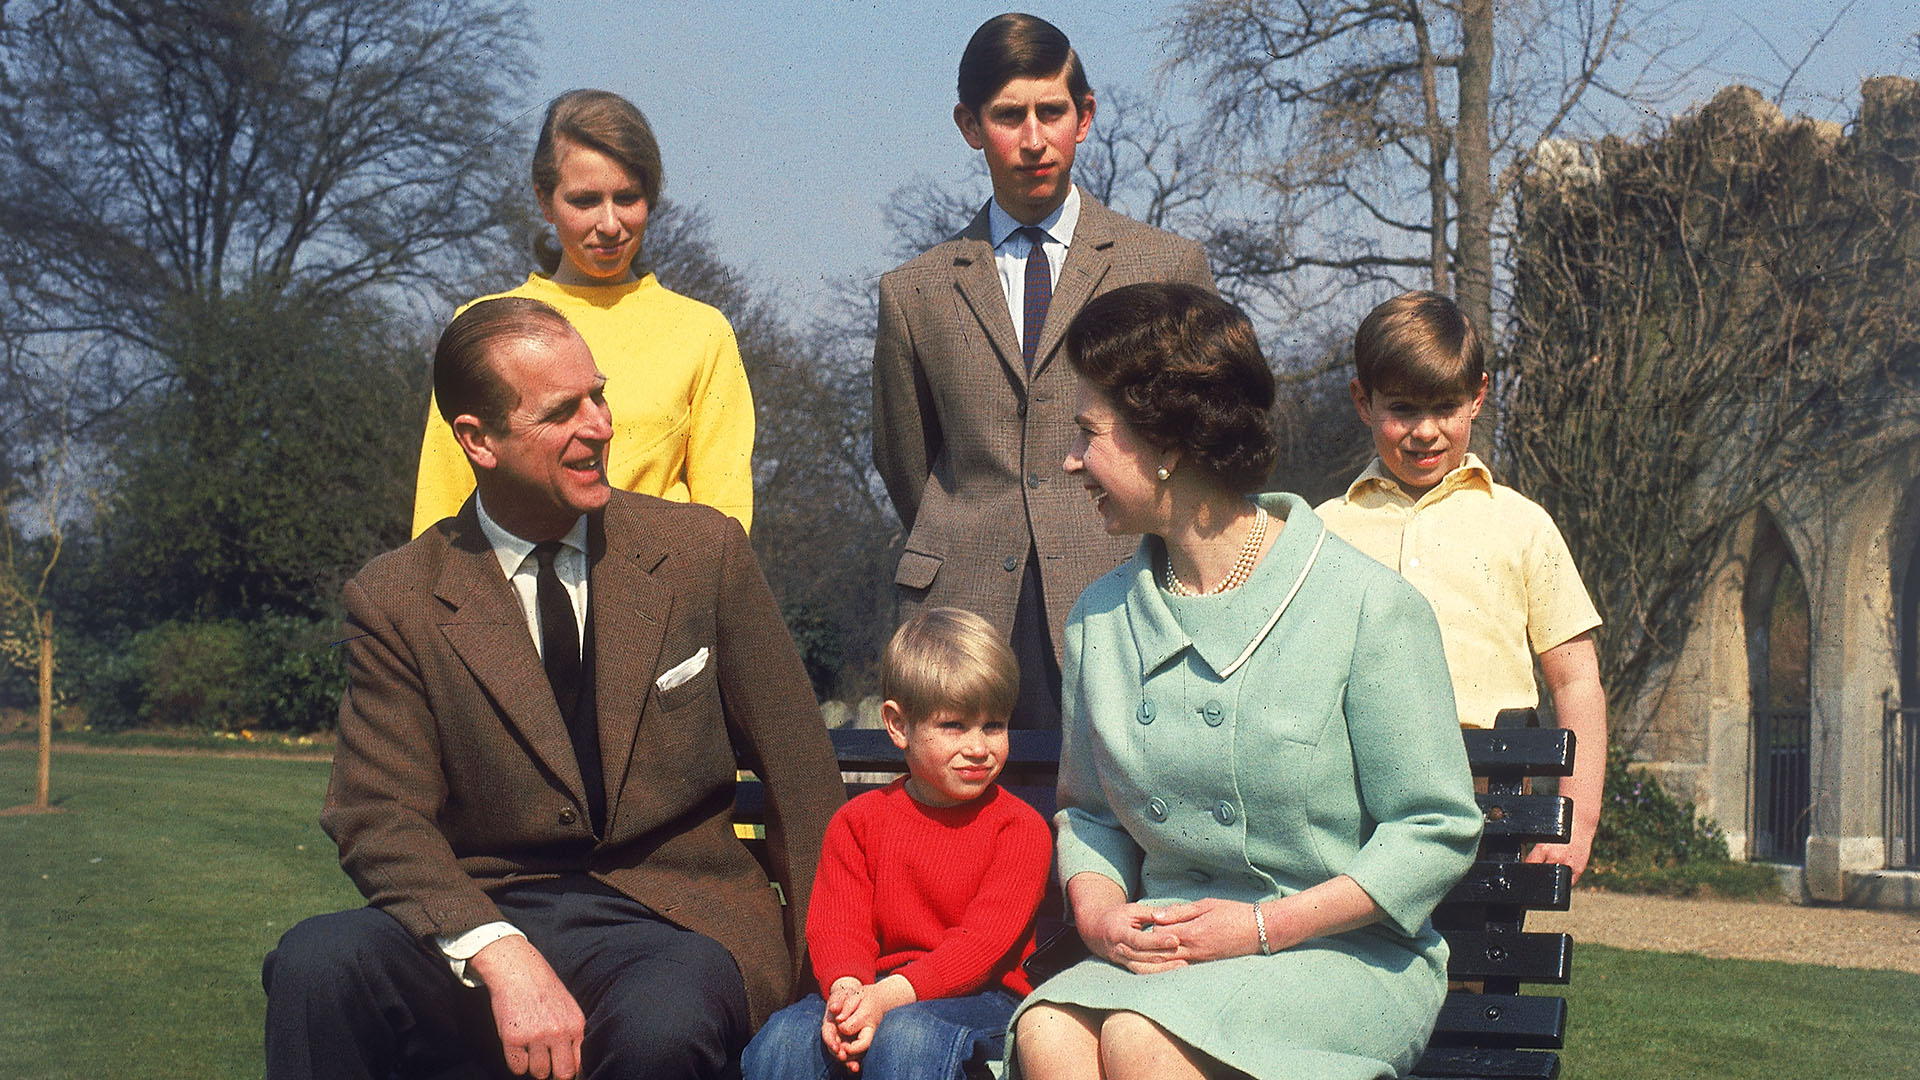 La reina Isabel II y su familia en Windsor en la primavera de 1968. De izquierda a derecha: Felipe, duque de Edimburgo, la princesa Ana, el príncipe Eduardo, Carlos y Andrés, duque de York